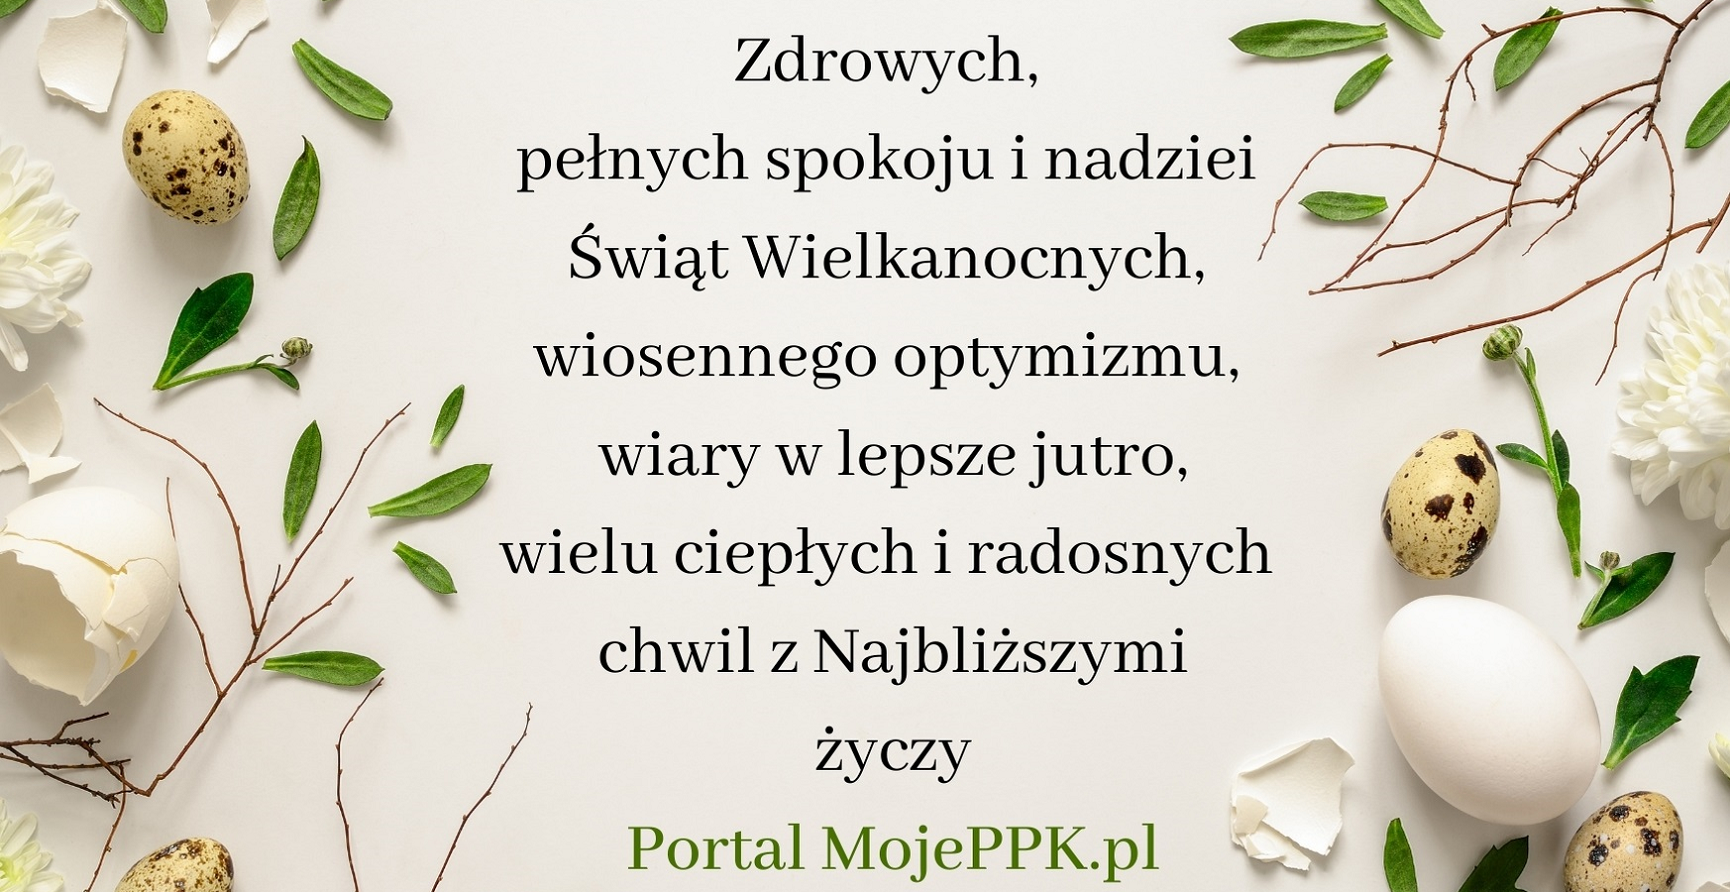 Życzenia wielkanocne od MojePPK.pl